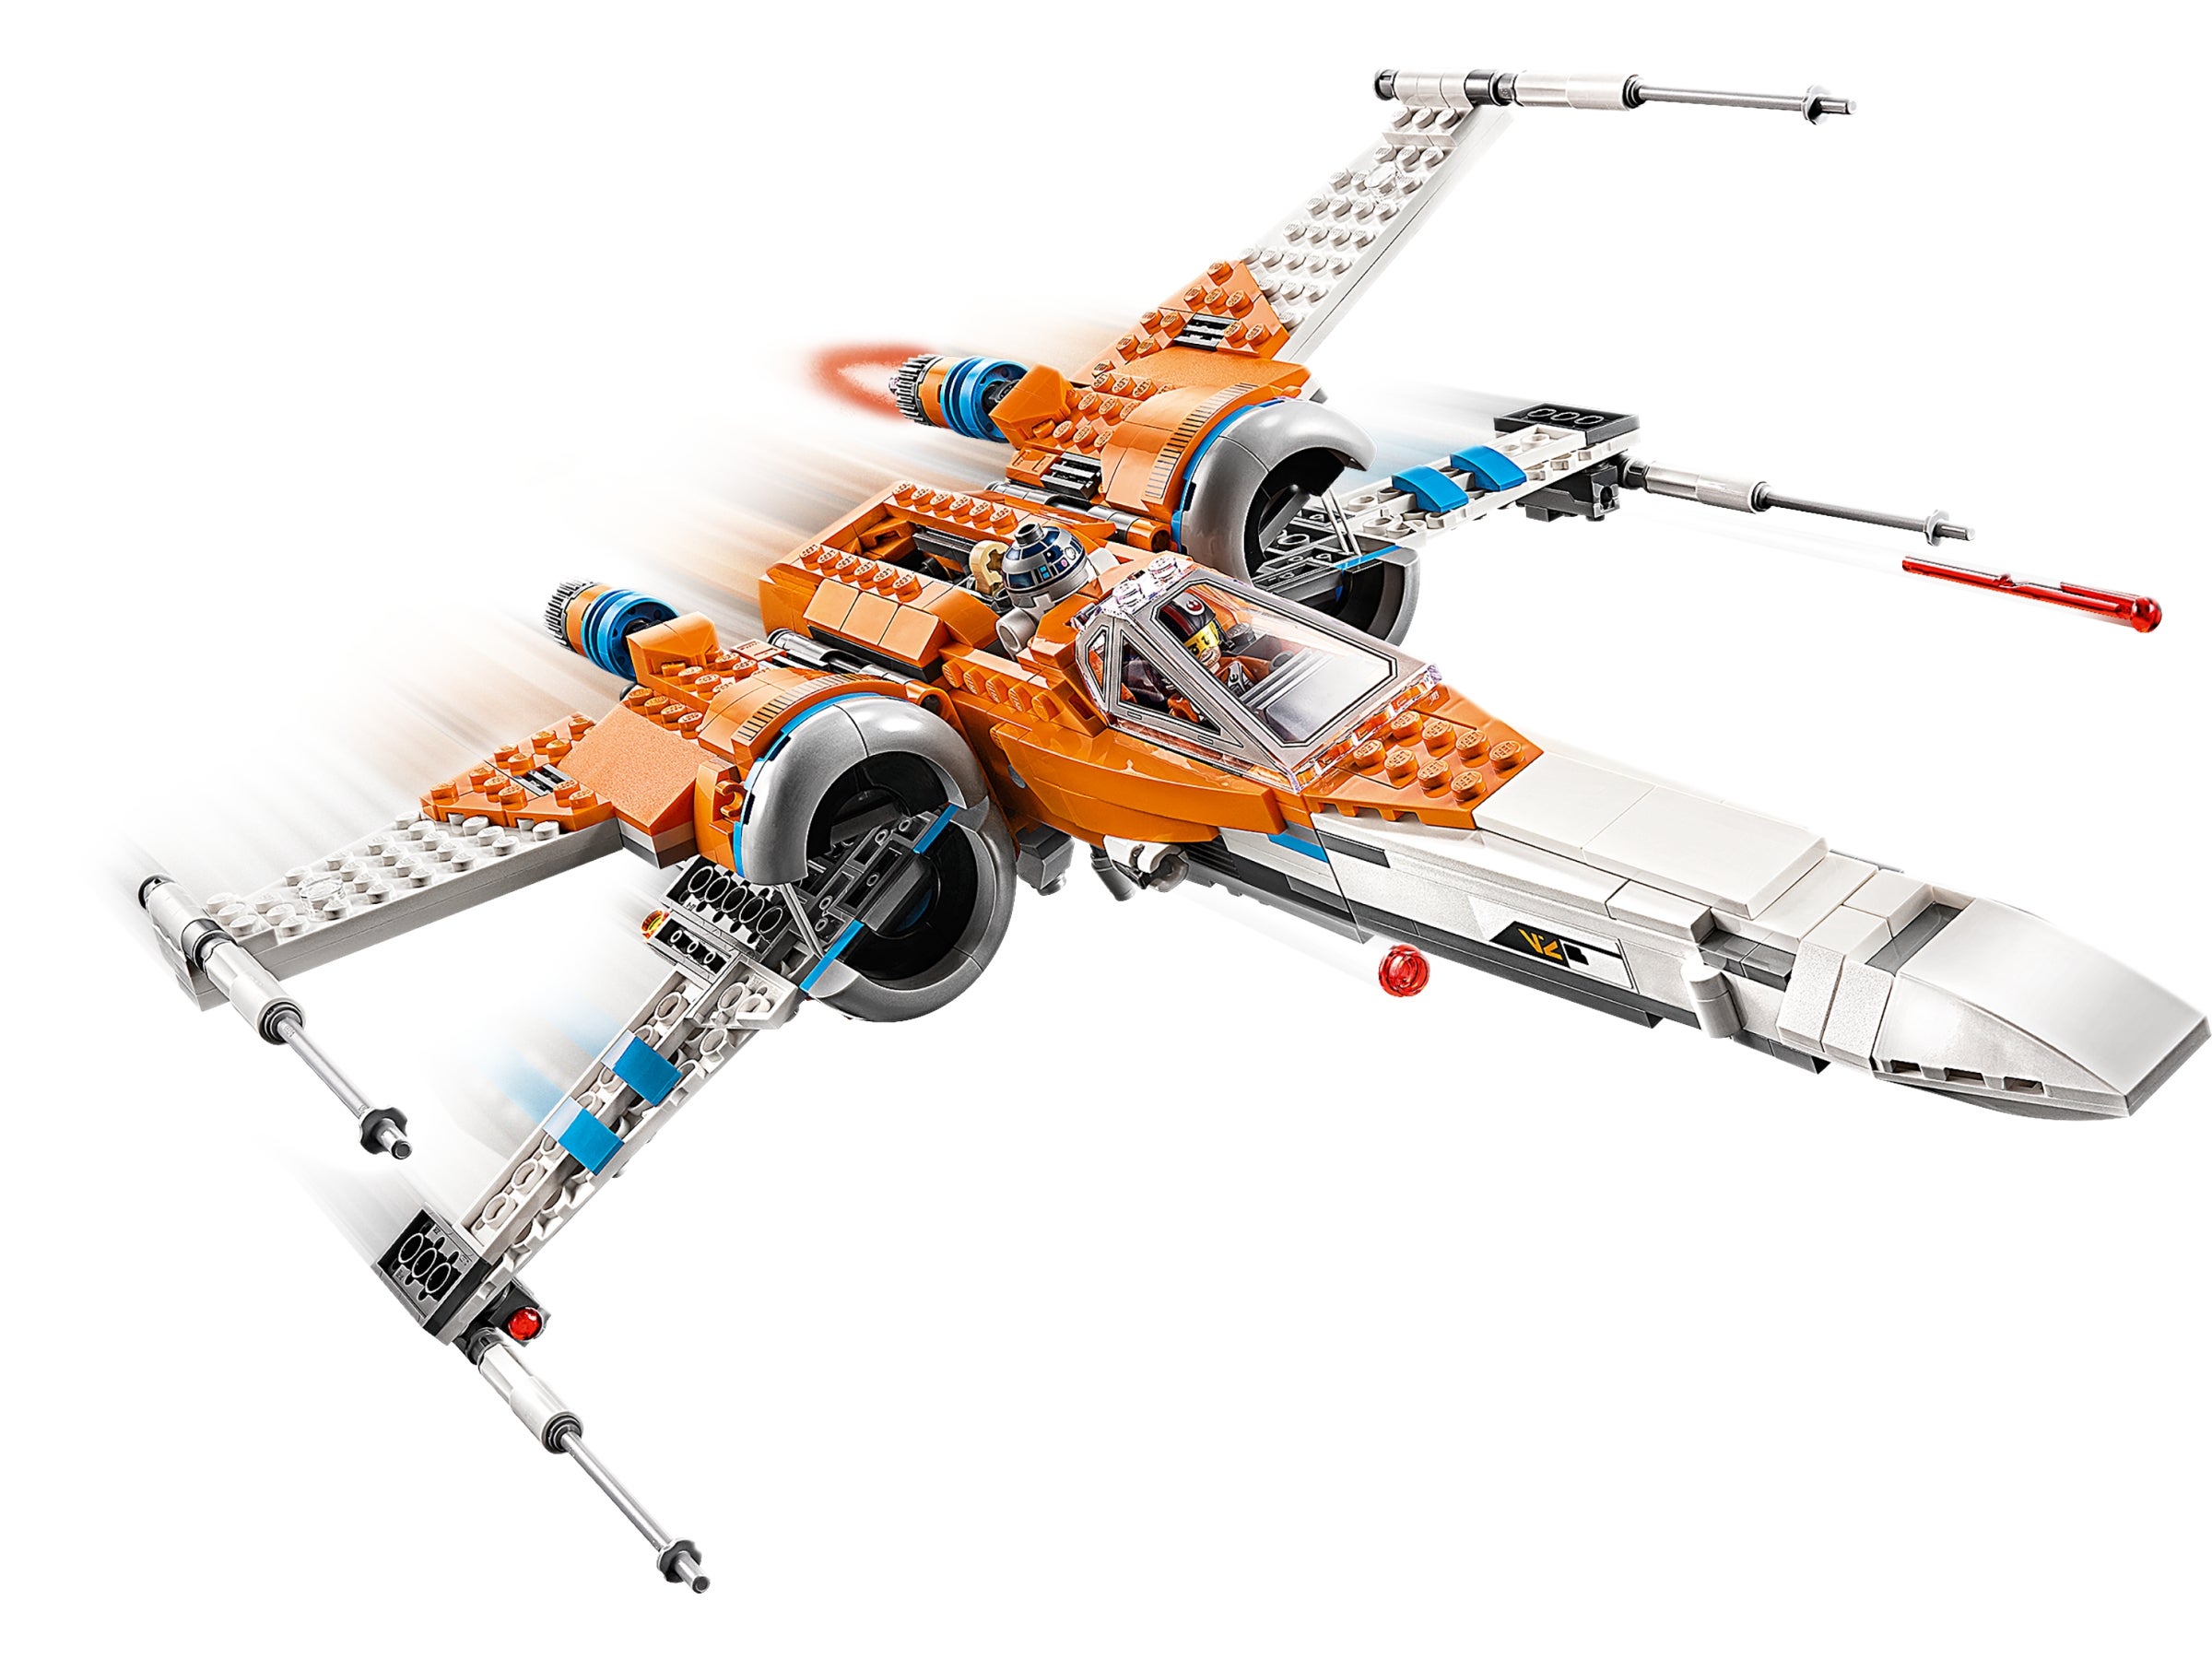 Poe Demeron´s X-Wing Fighter ohne Figuren neuwertig LEGO® Star wars 75273